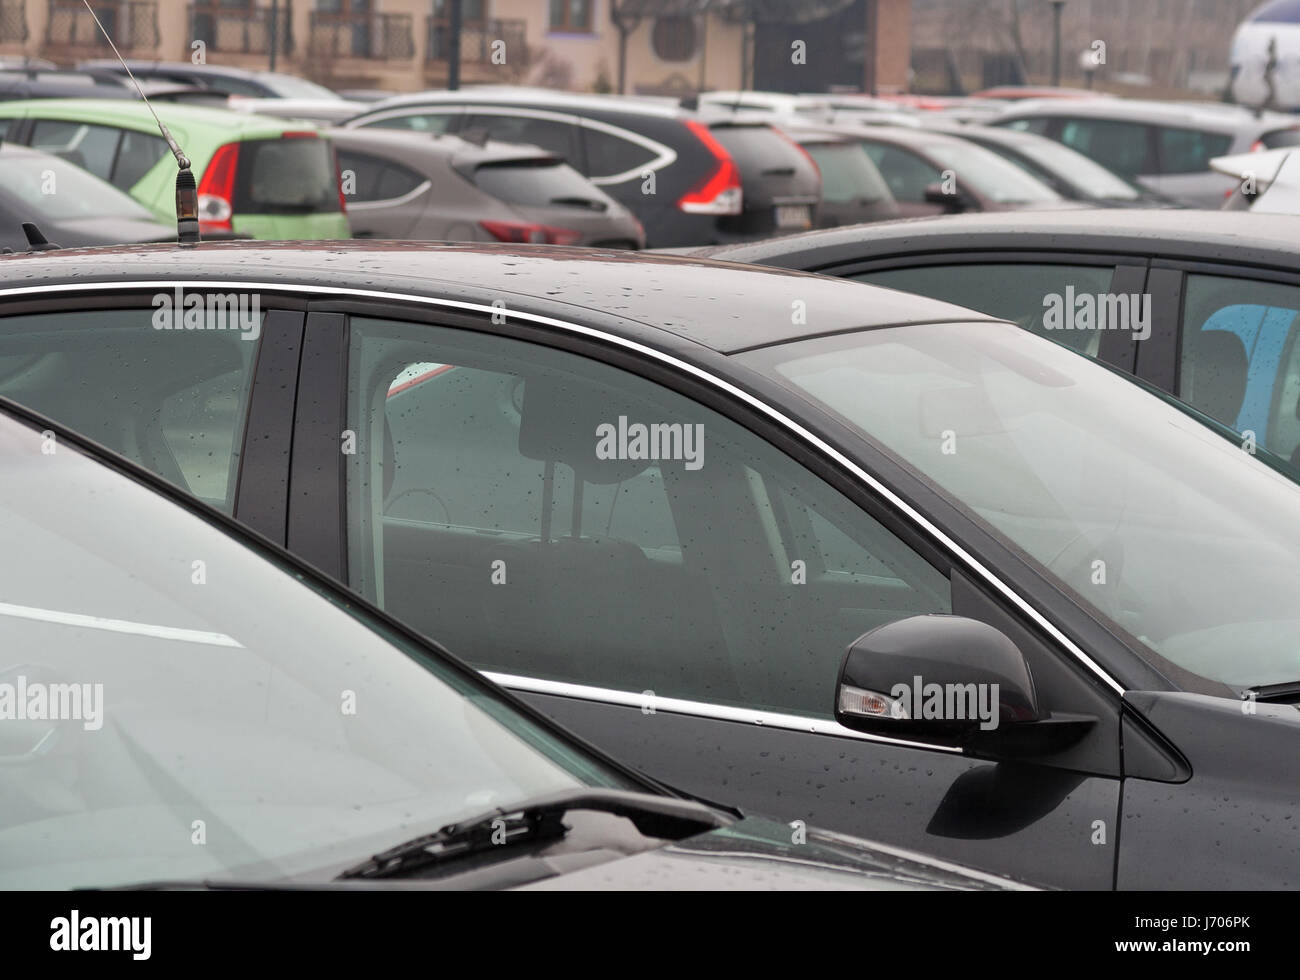 Avis de stationnement de voitures sur un jour de pluie closeup Banque D'Images